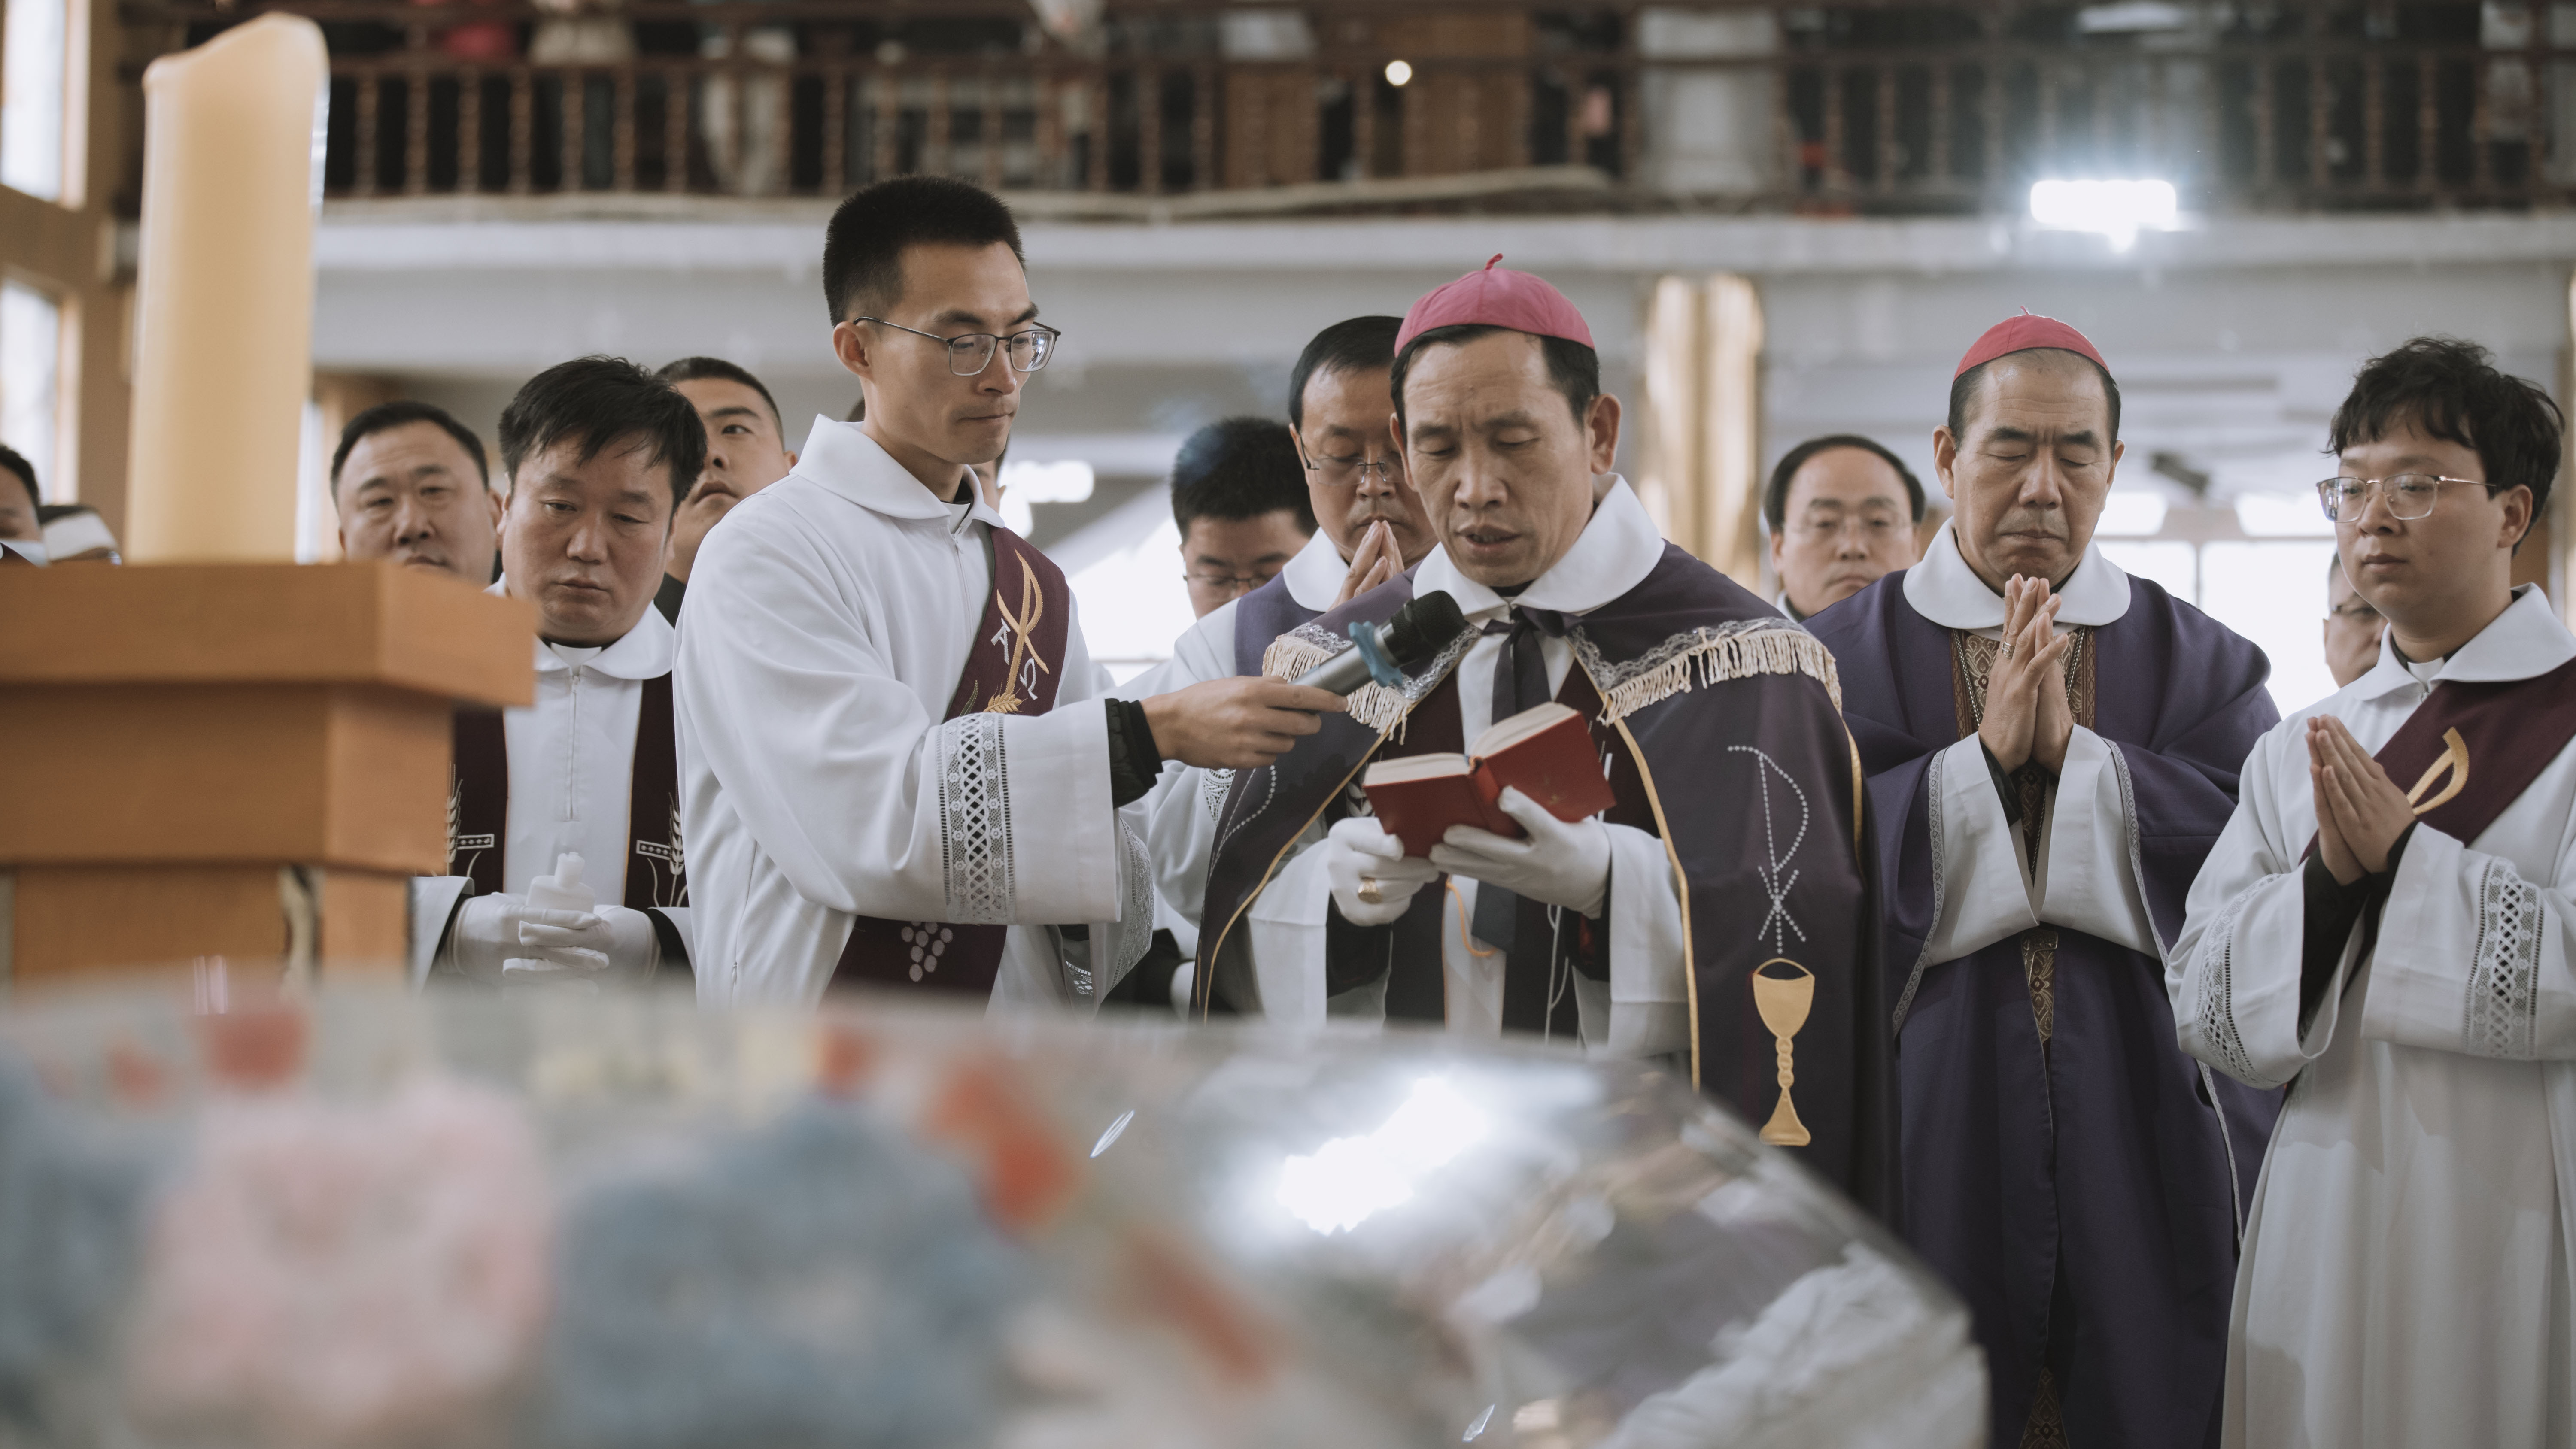 教区副主教朱喜乐神父向大家宣读前来吊唁,发送唁电,敬献花圈,敬献